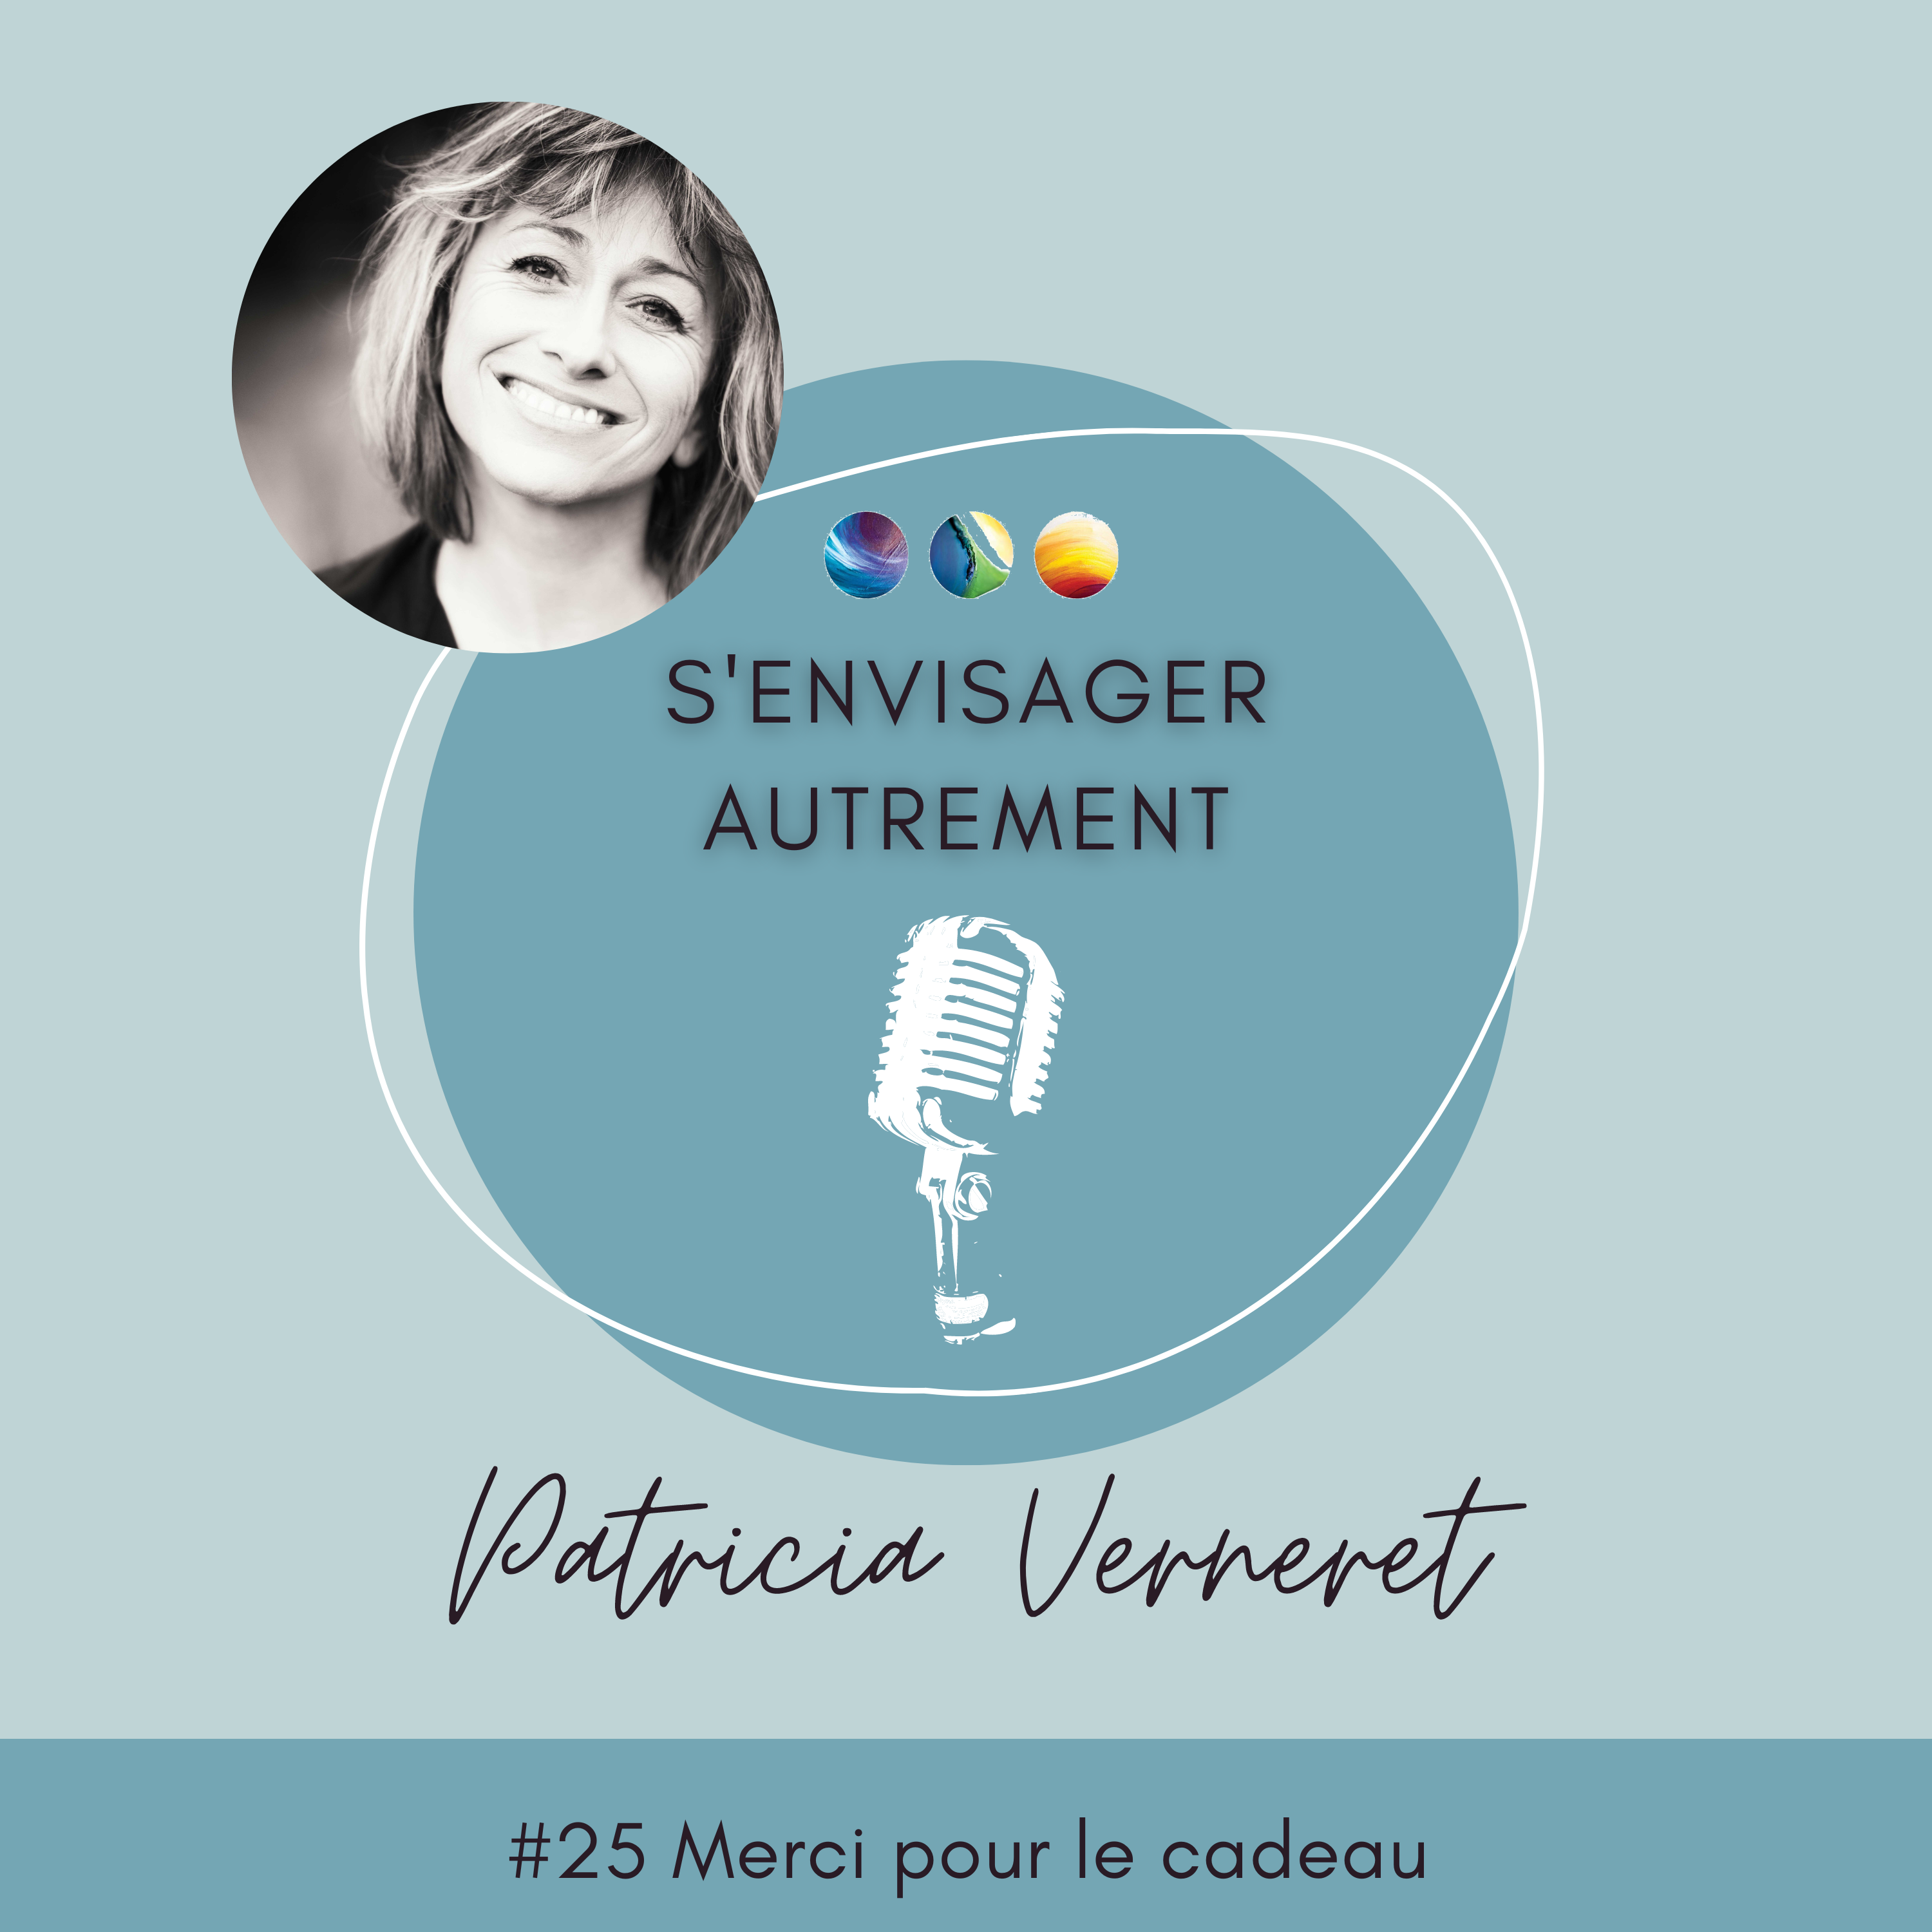 Podcast s'envisager autrement Patricia Verneret